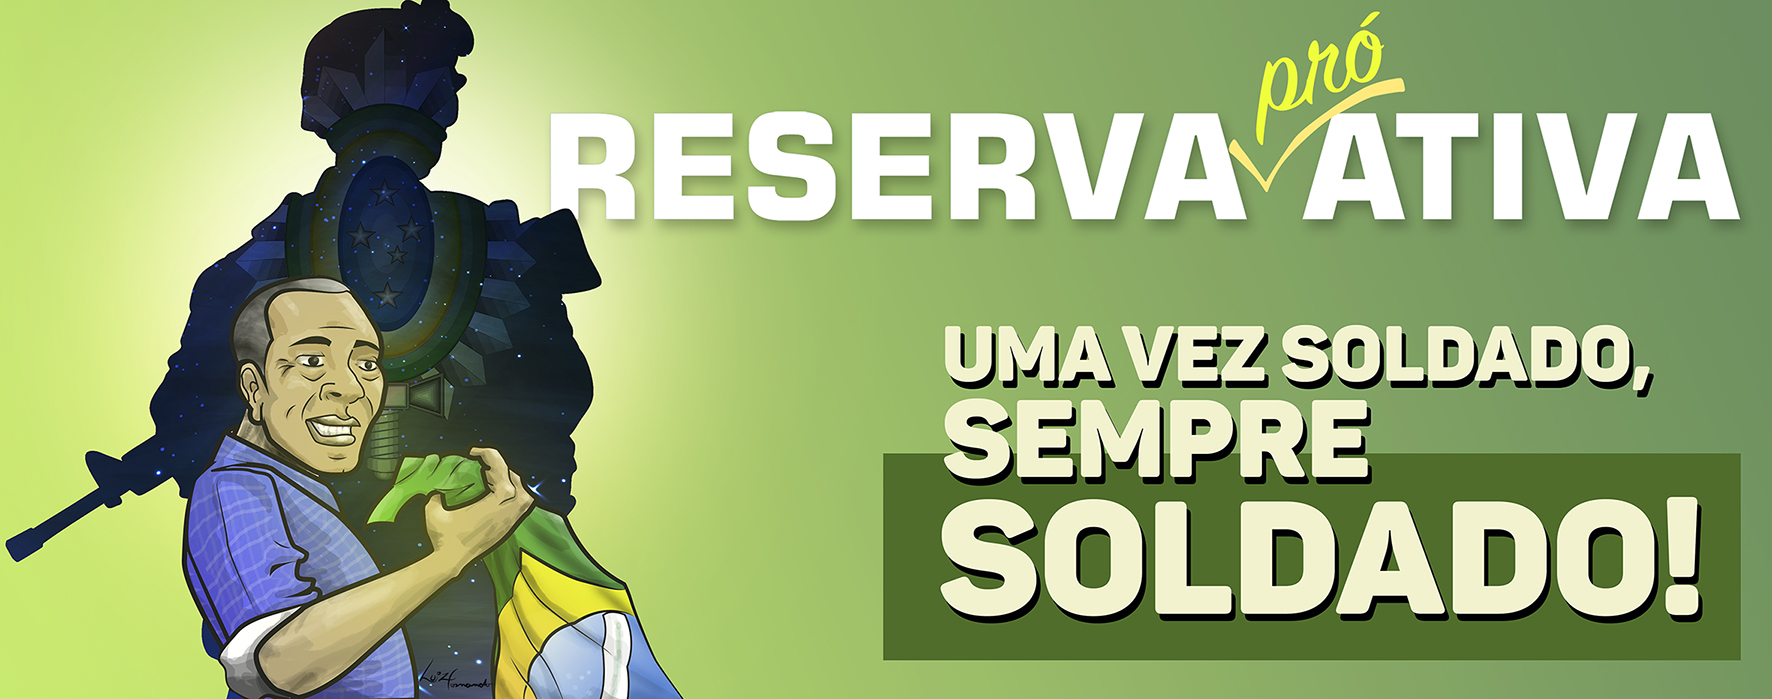 Banner_Reserva_ProAtiva_2018_verde.jpg